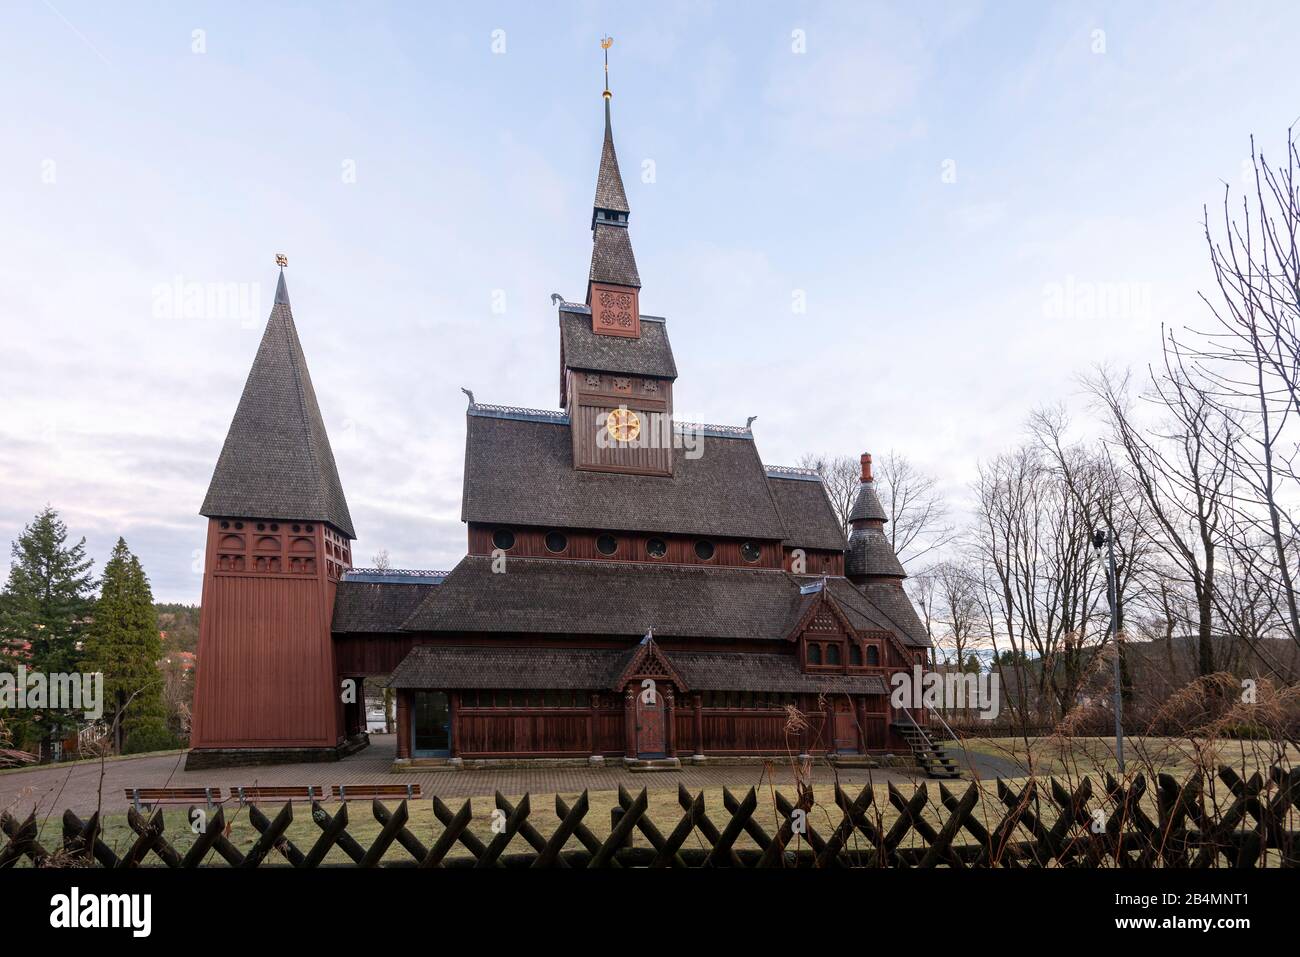 Allemagne, Basse-Saxe, Harz, Goslar, Gustav Adolf Stave Church à Hahnenklee, construite de 1907 à 1908, modélisée sur l'église Stave de Borgund en Norvège. Banque D'Images